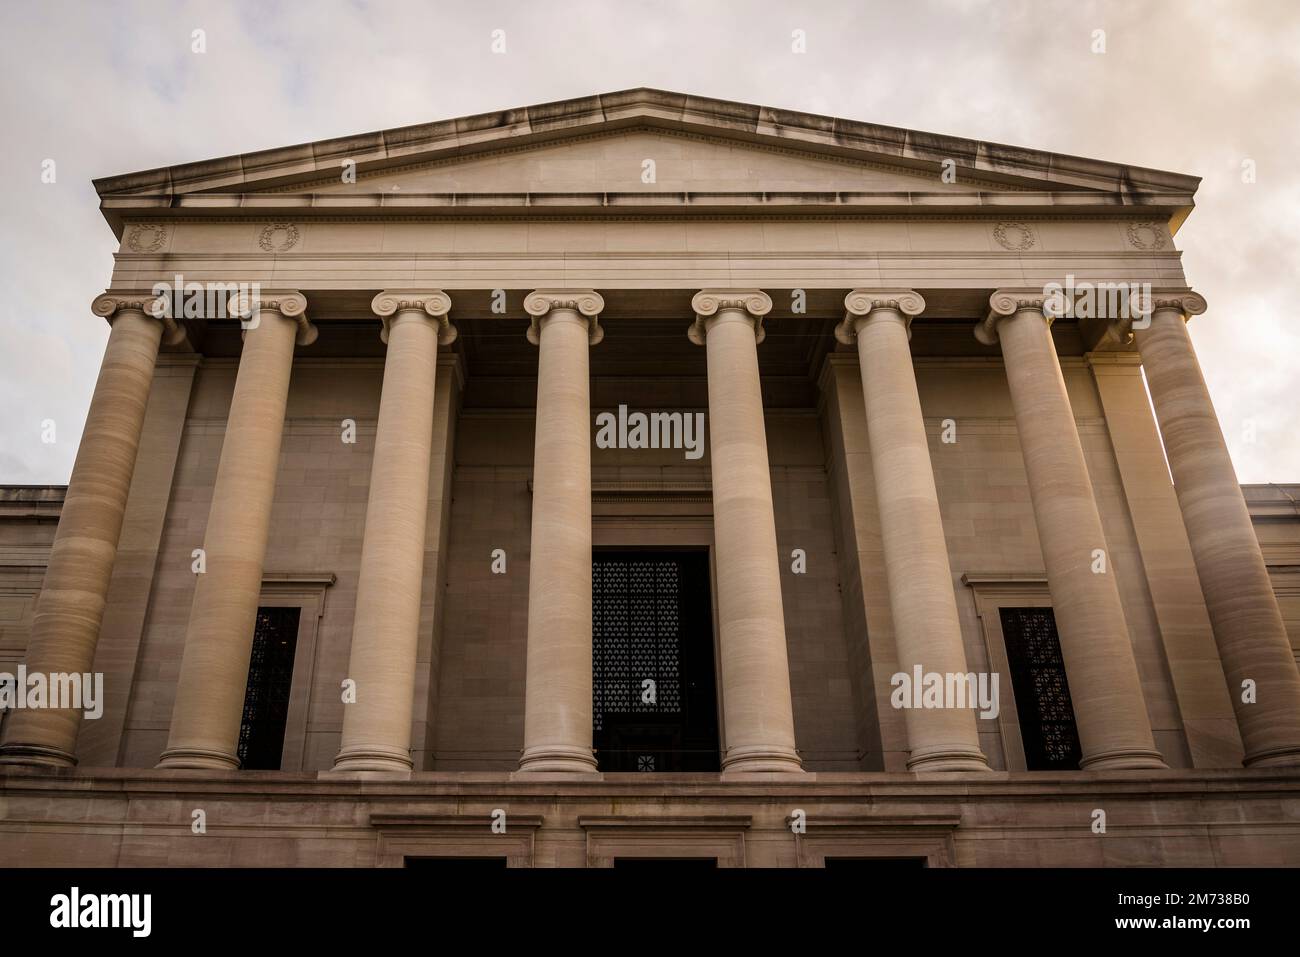 Facciata neoclassica con colonne ioniche della National Gallery of Art, Washington, D.C., USA Foto Stock